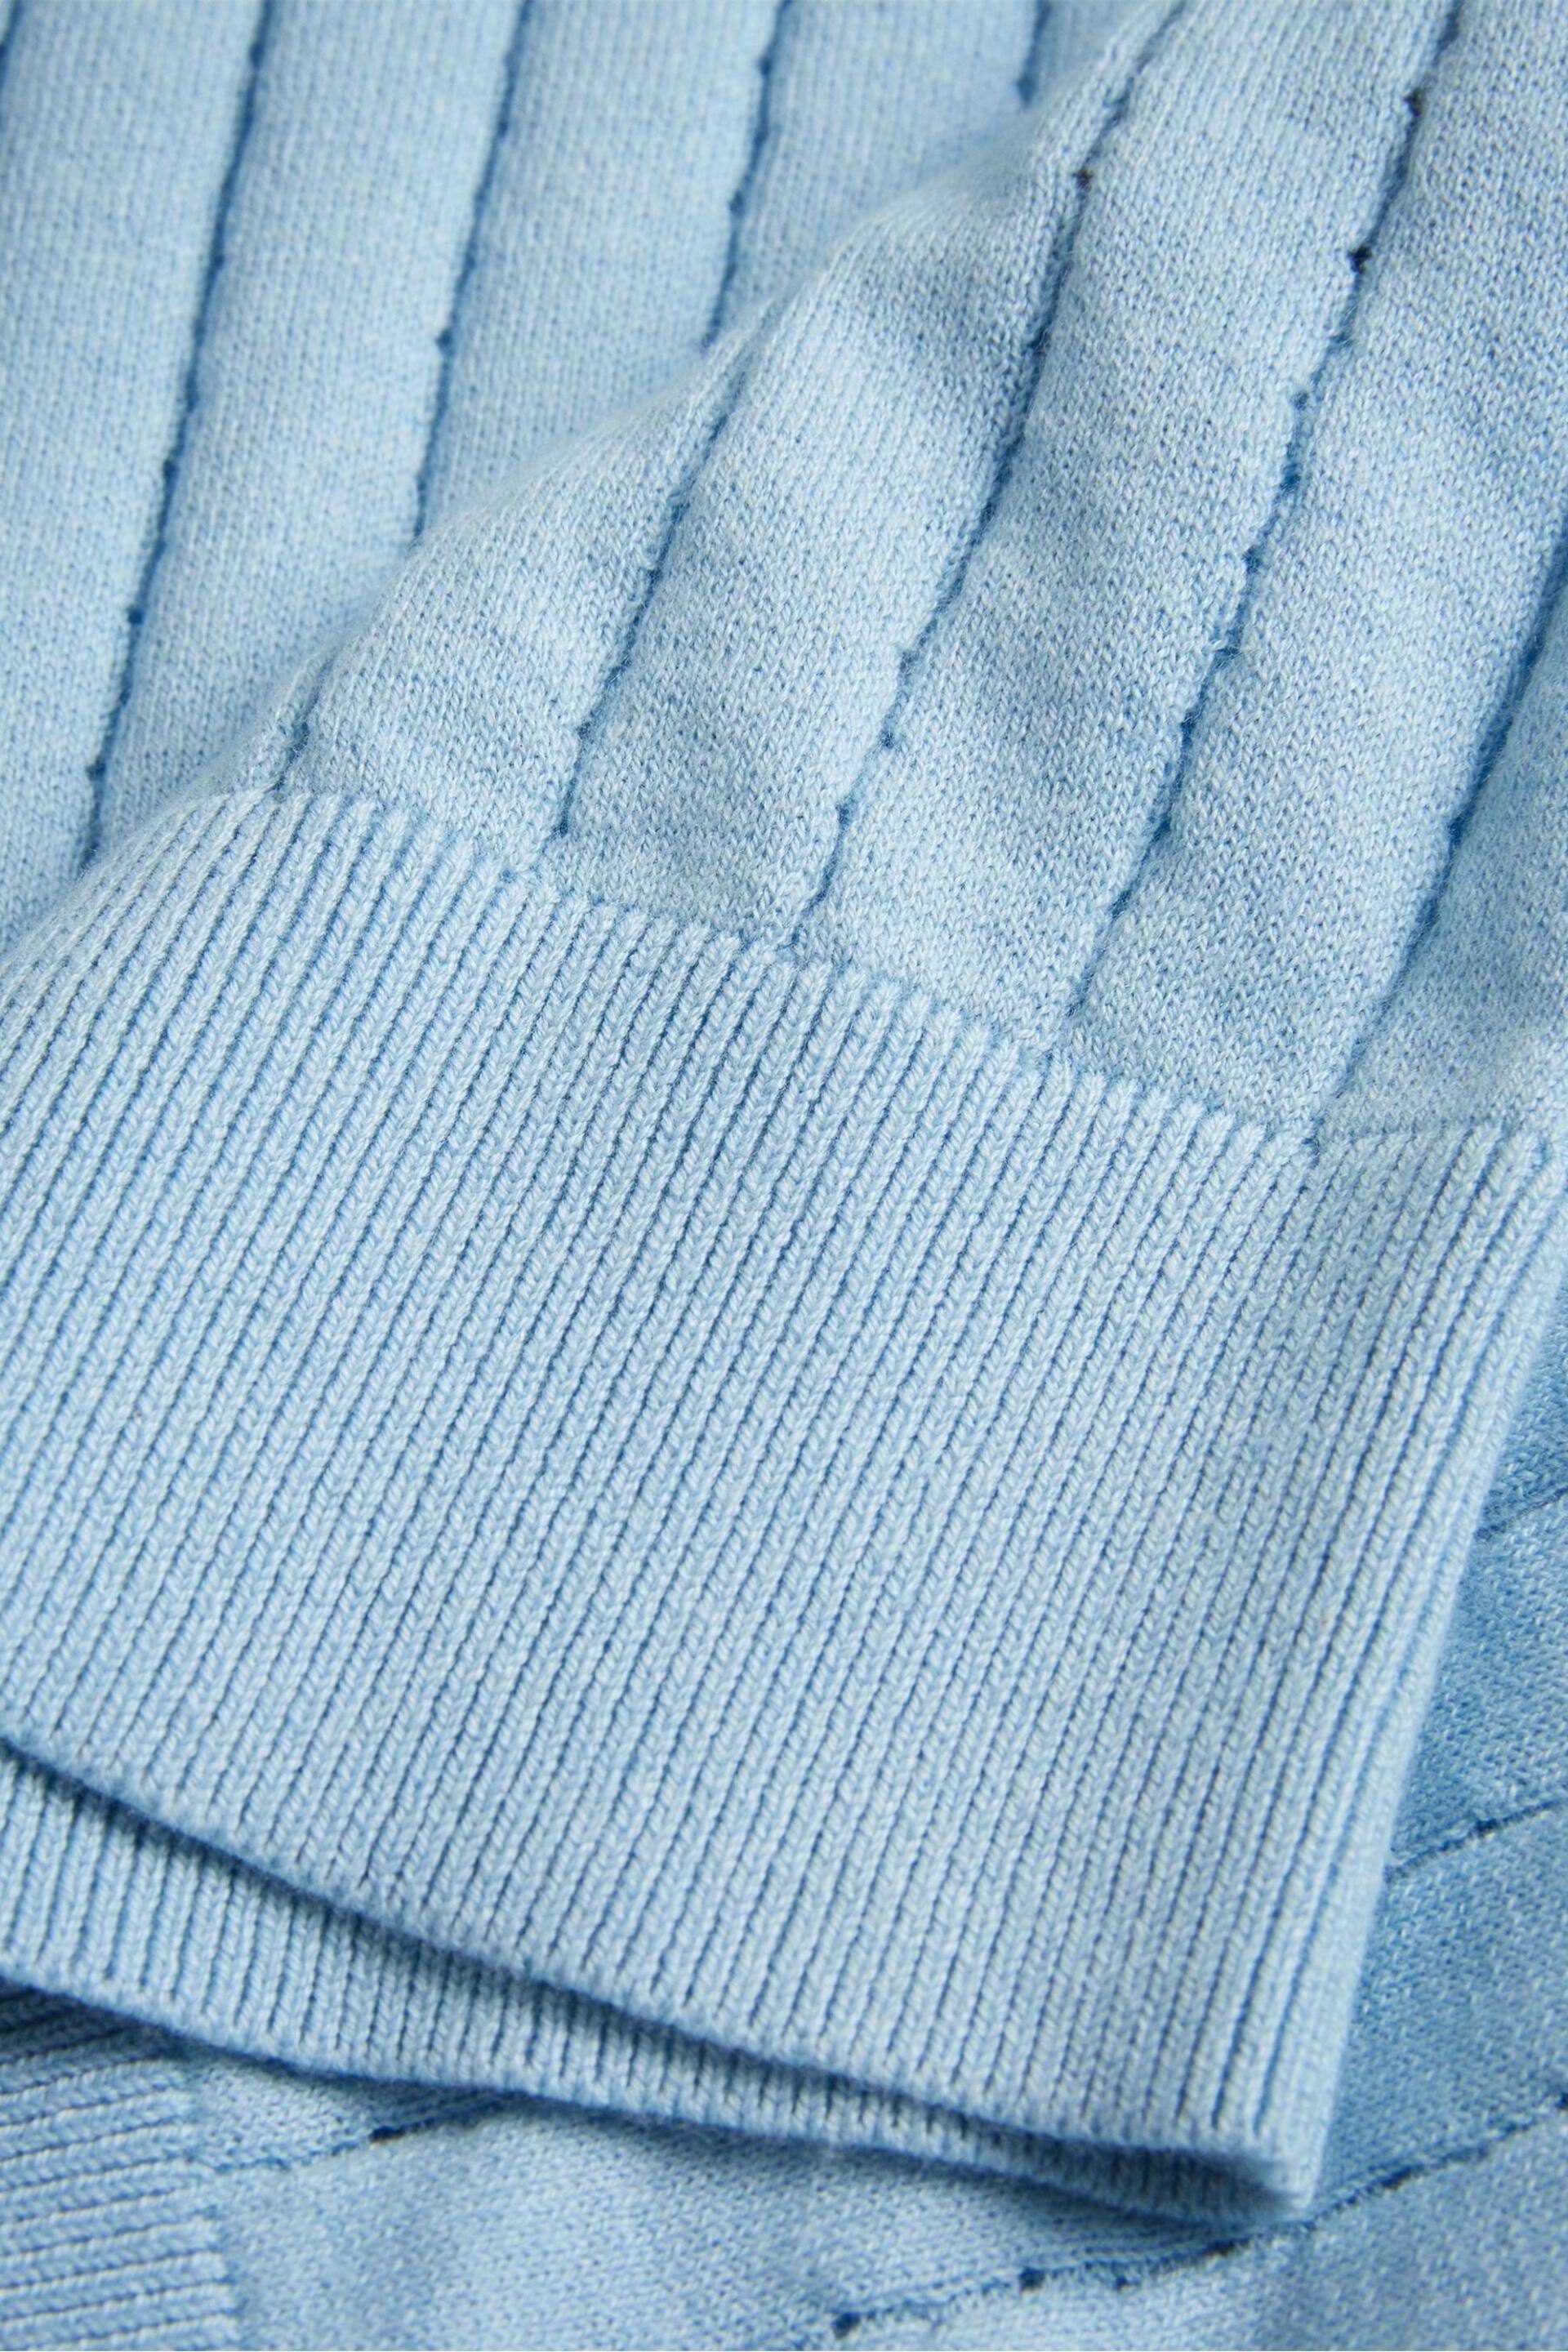 Ted Baker Light Blue Botany Regular Open Collar Polo Shirt - Image 6 of 6